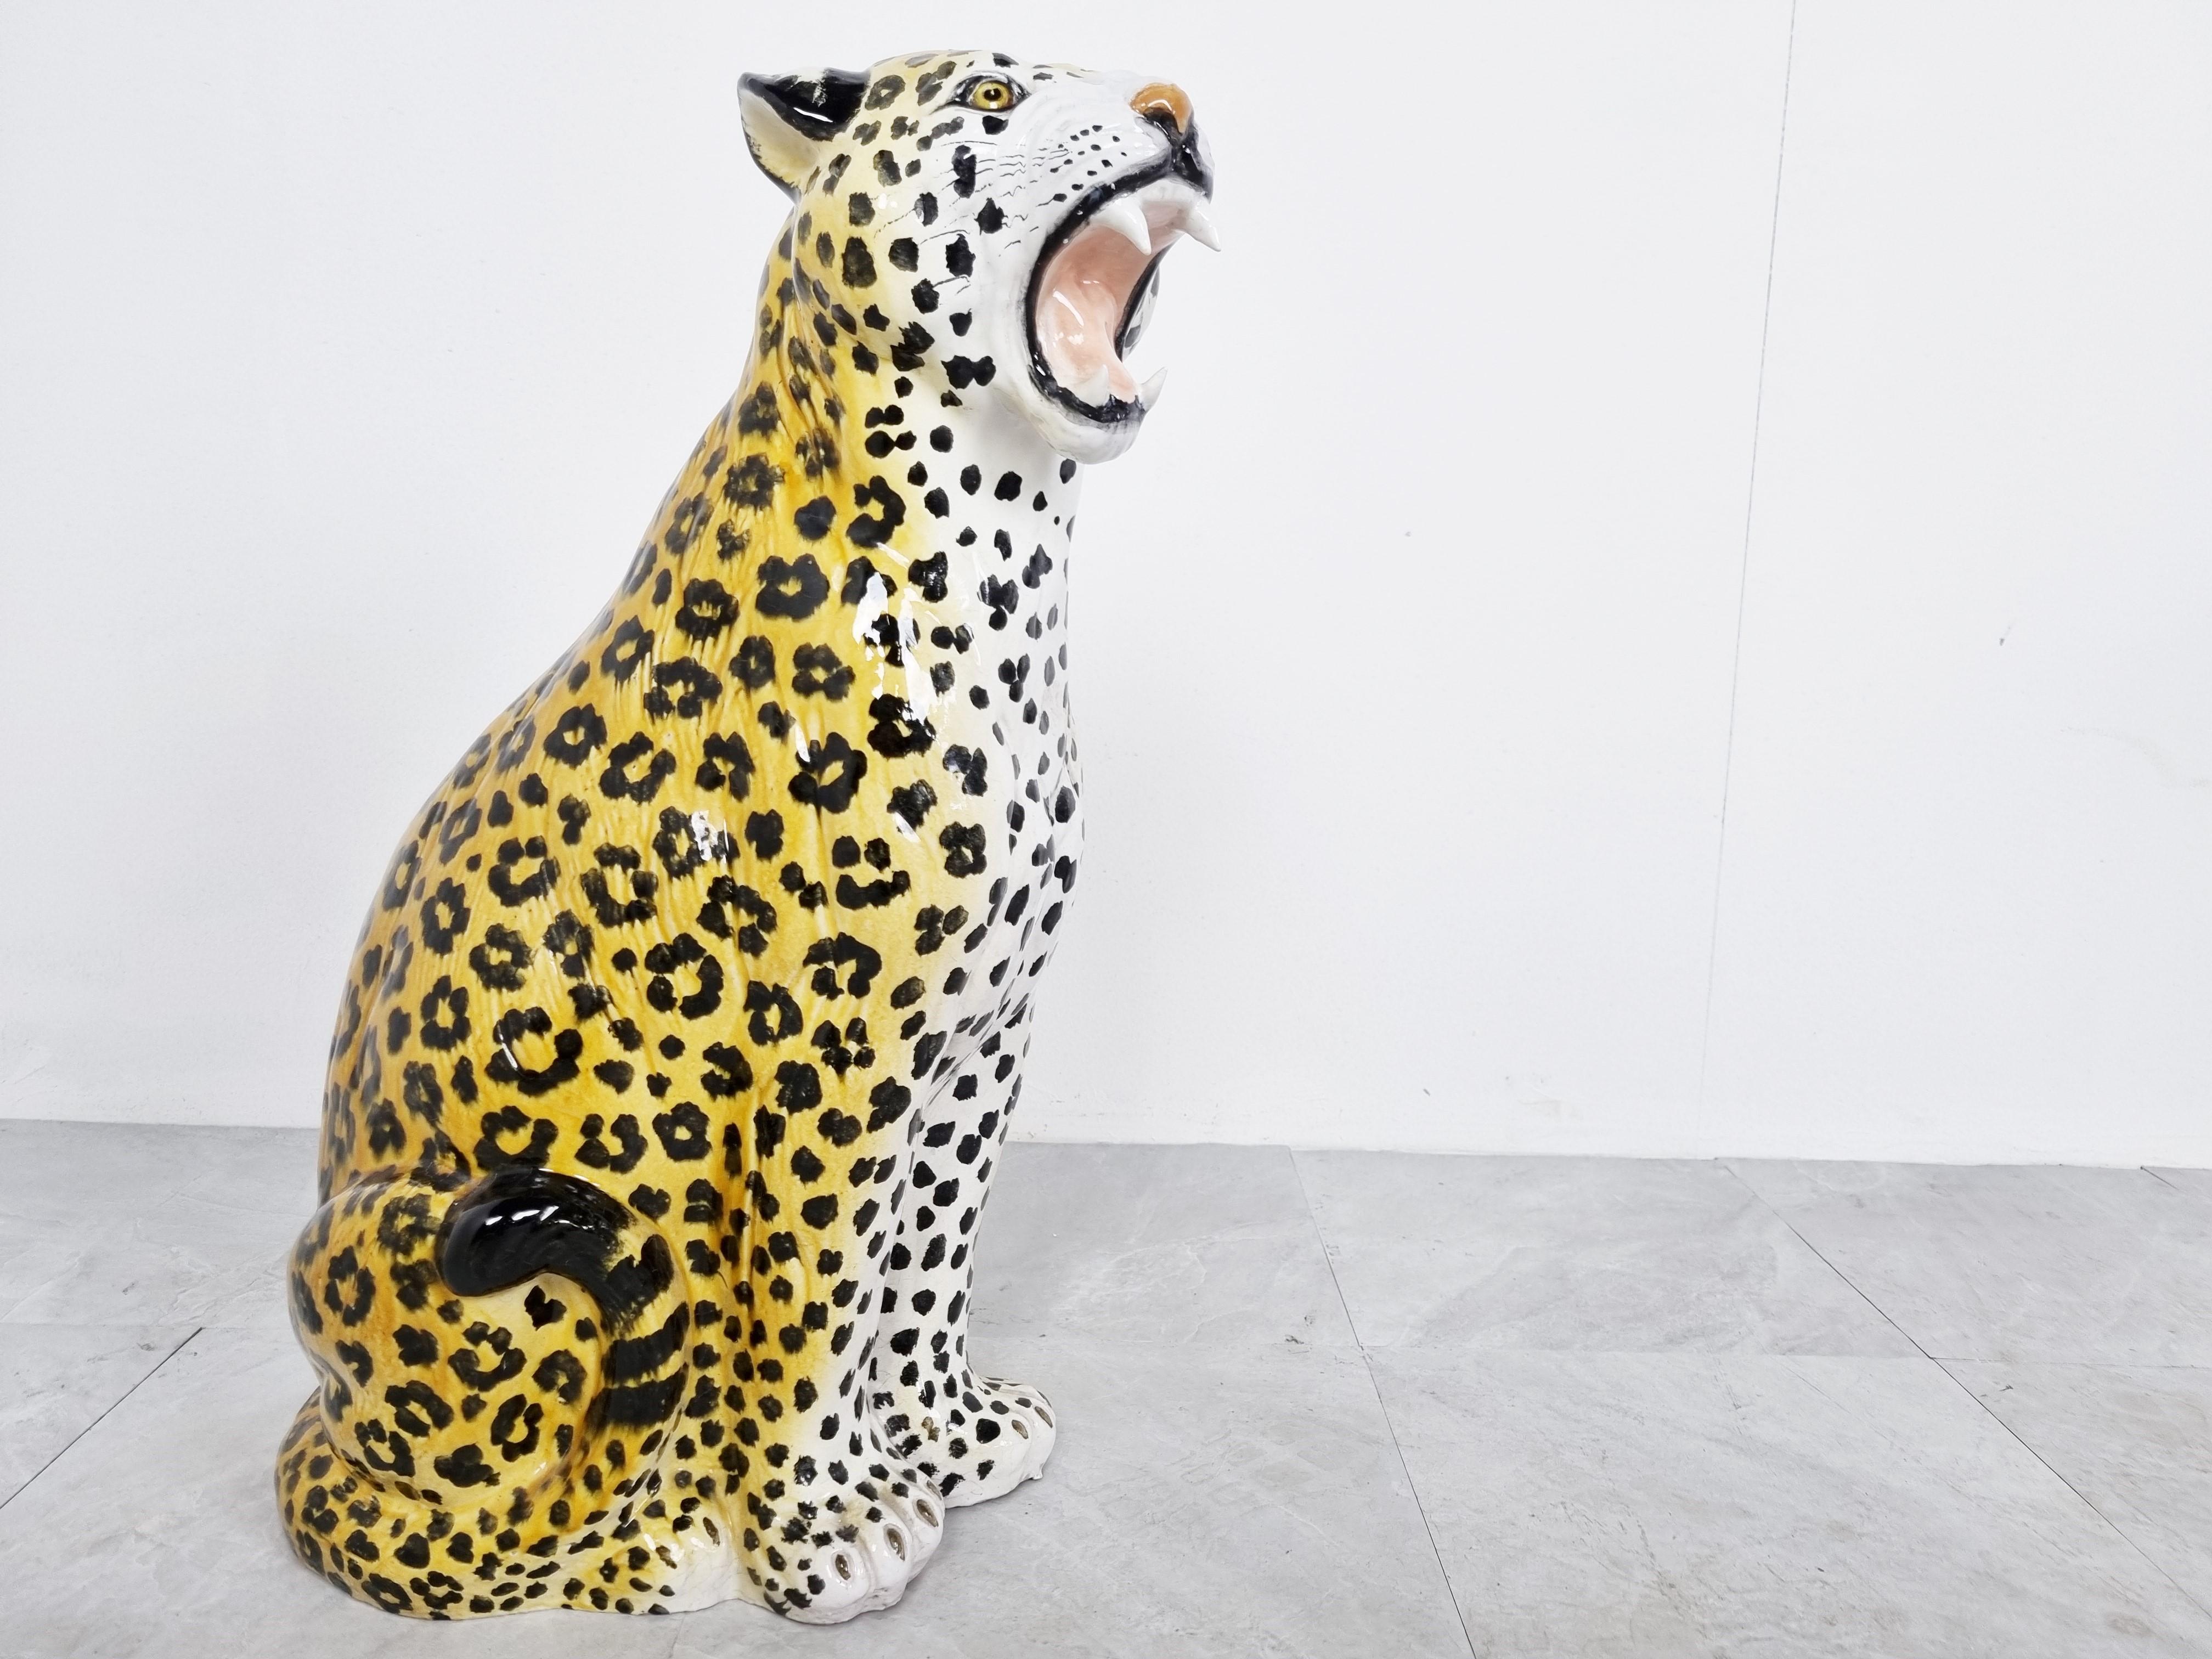 Italian Glazed Terracotta Leopard Figure, 1960s For Sale 2